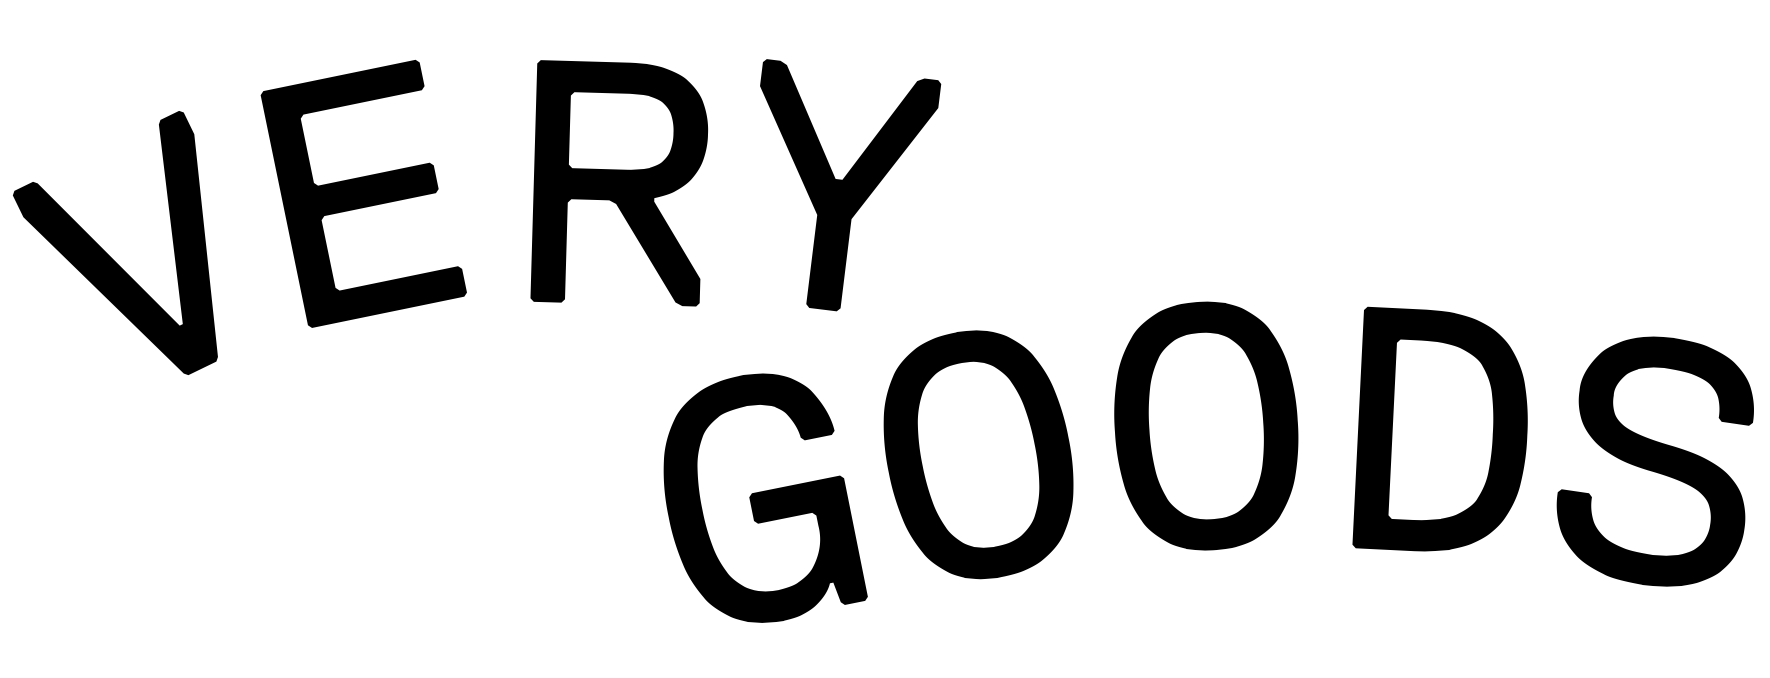 Very Goods Logo